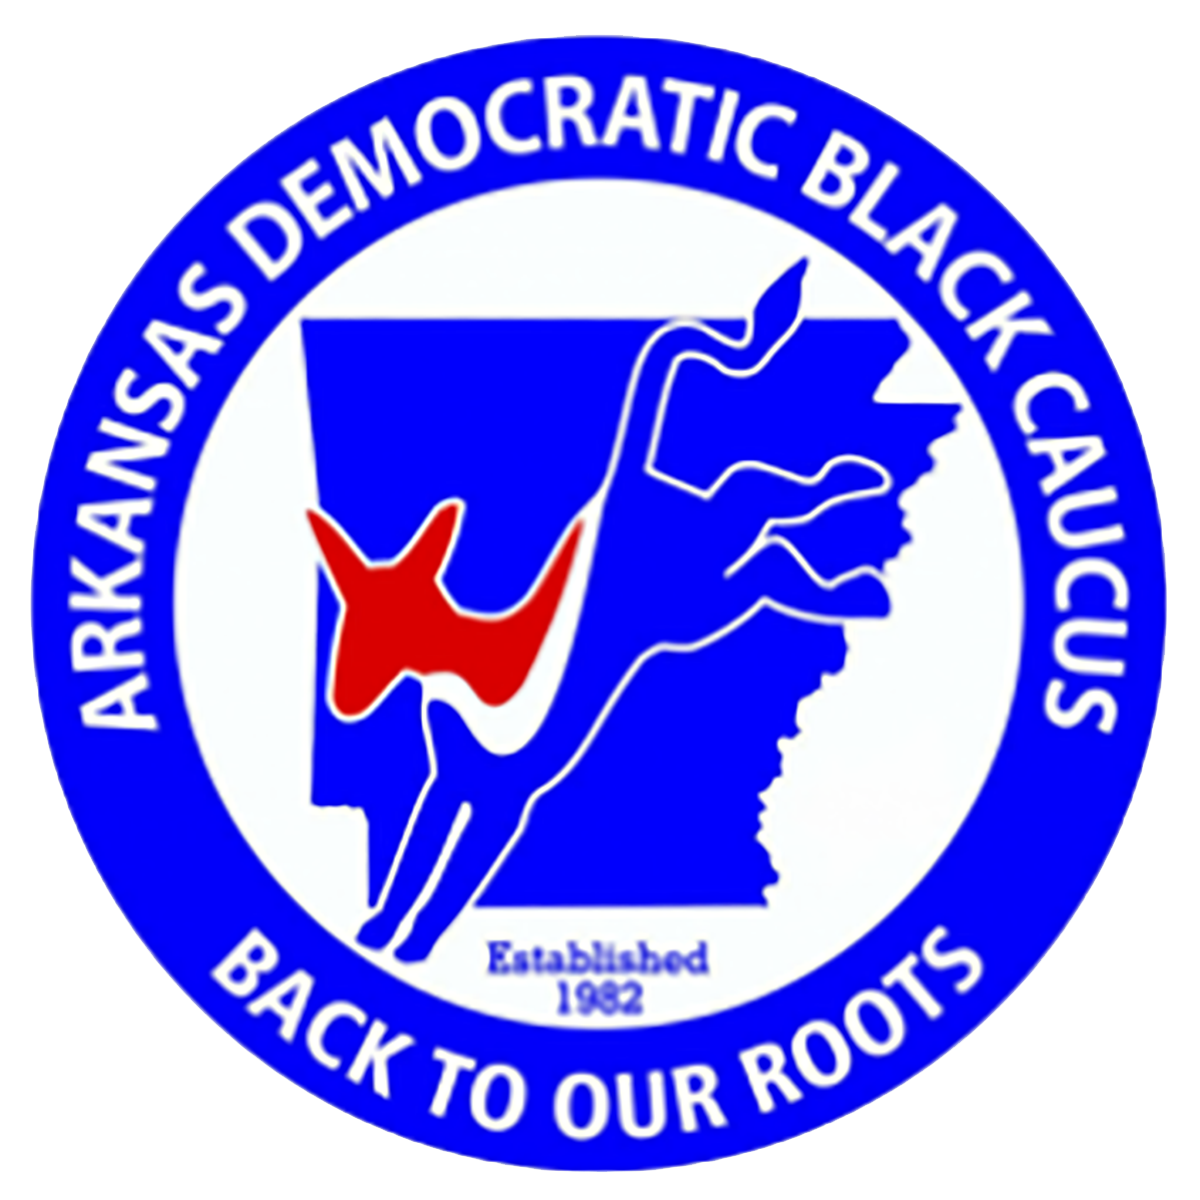 Arkansas Democratic Black Caucus